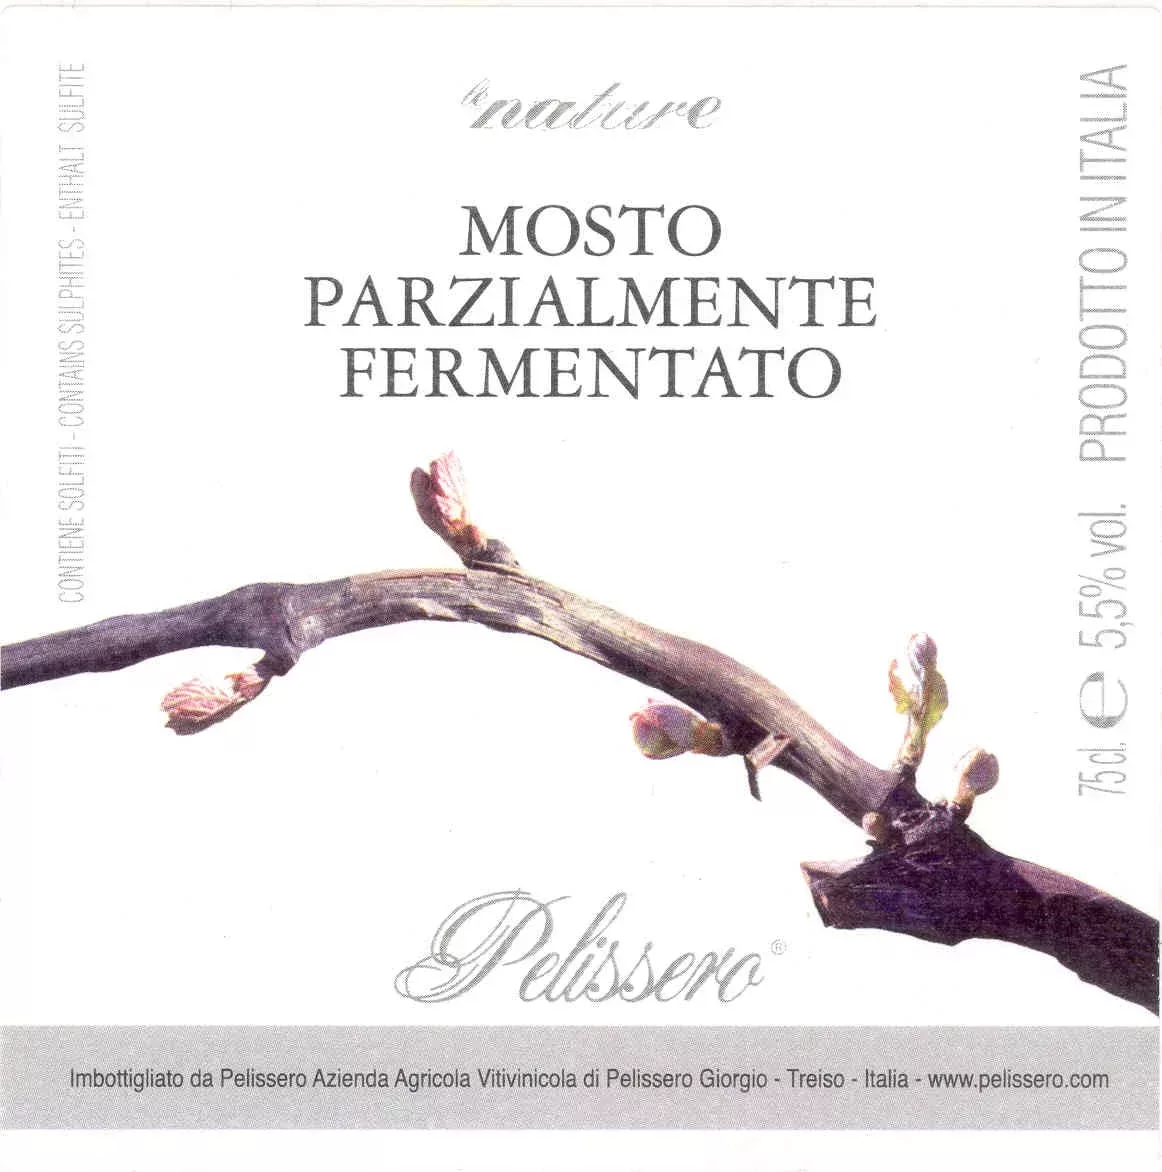 Le Nature Mosto Parzialmente Fermentato - Pelissero (label)